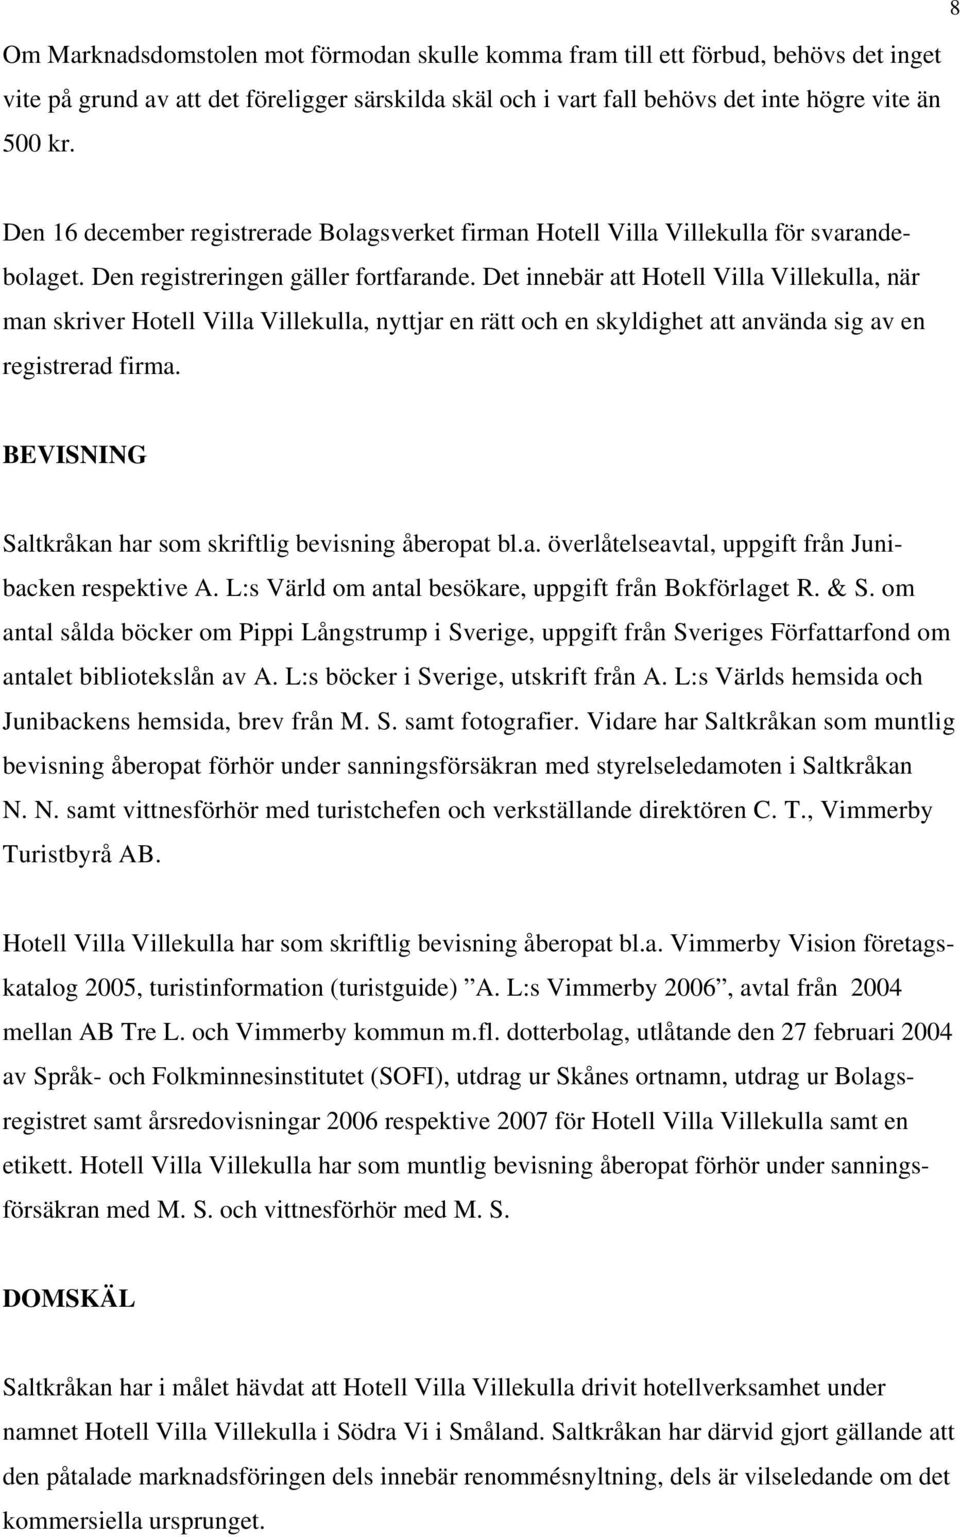 Det innebär att Hotell Villa Villekulla, när man skriver Hotell Villa Villekulla, nyttjar en rätt och en skyldighet att använda sig av en registrerad firma.